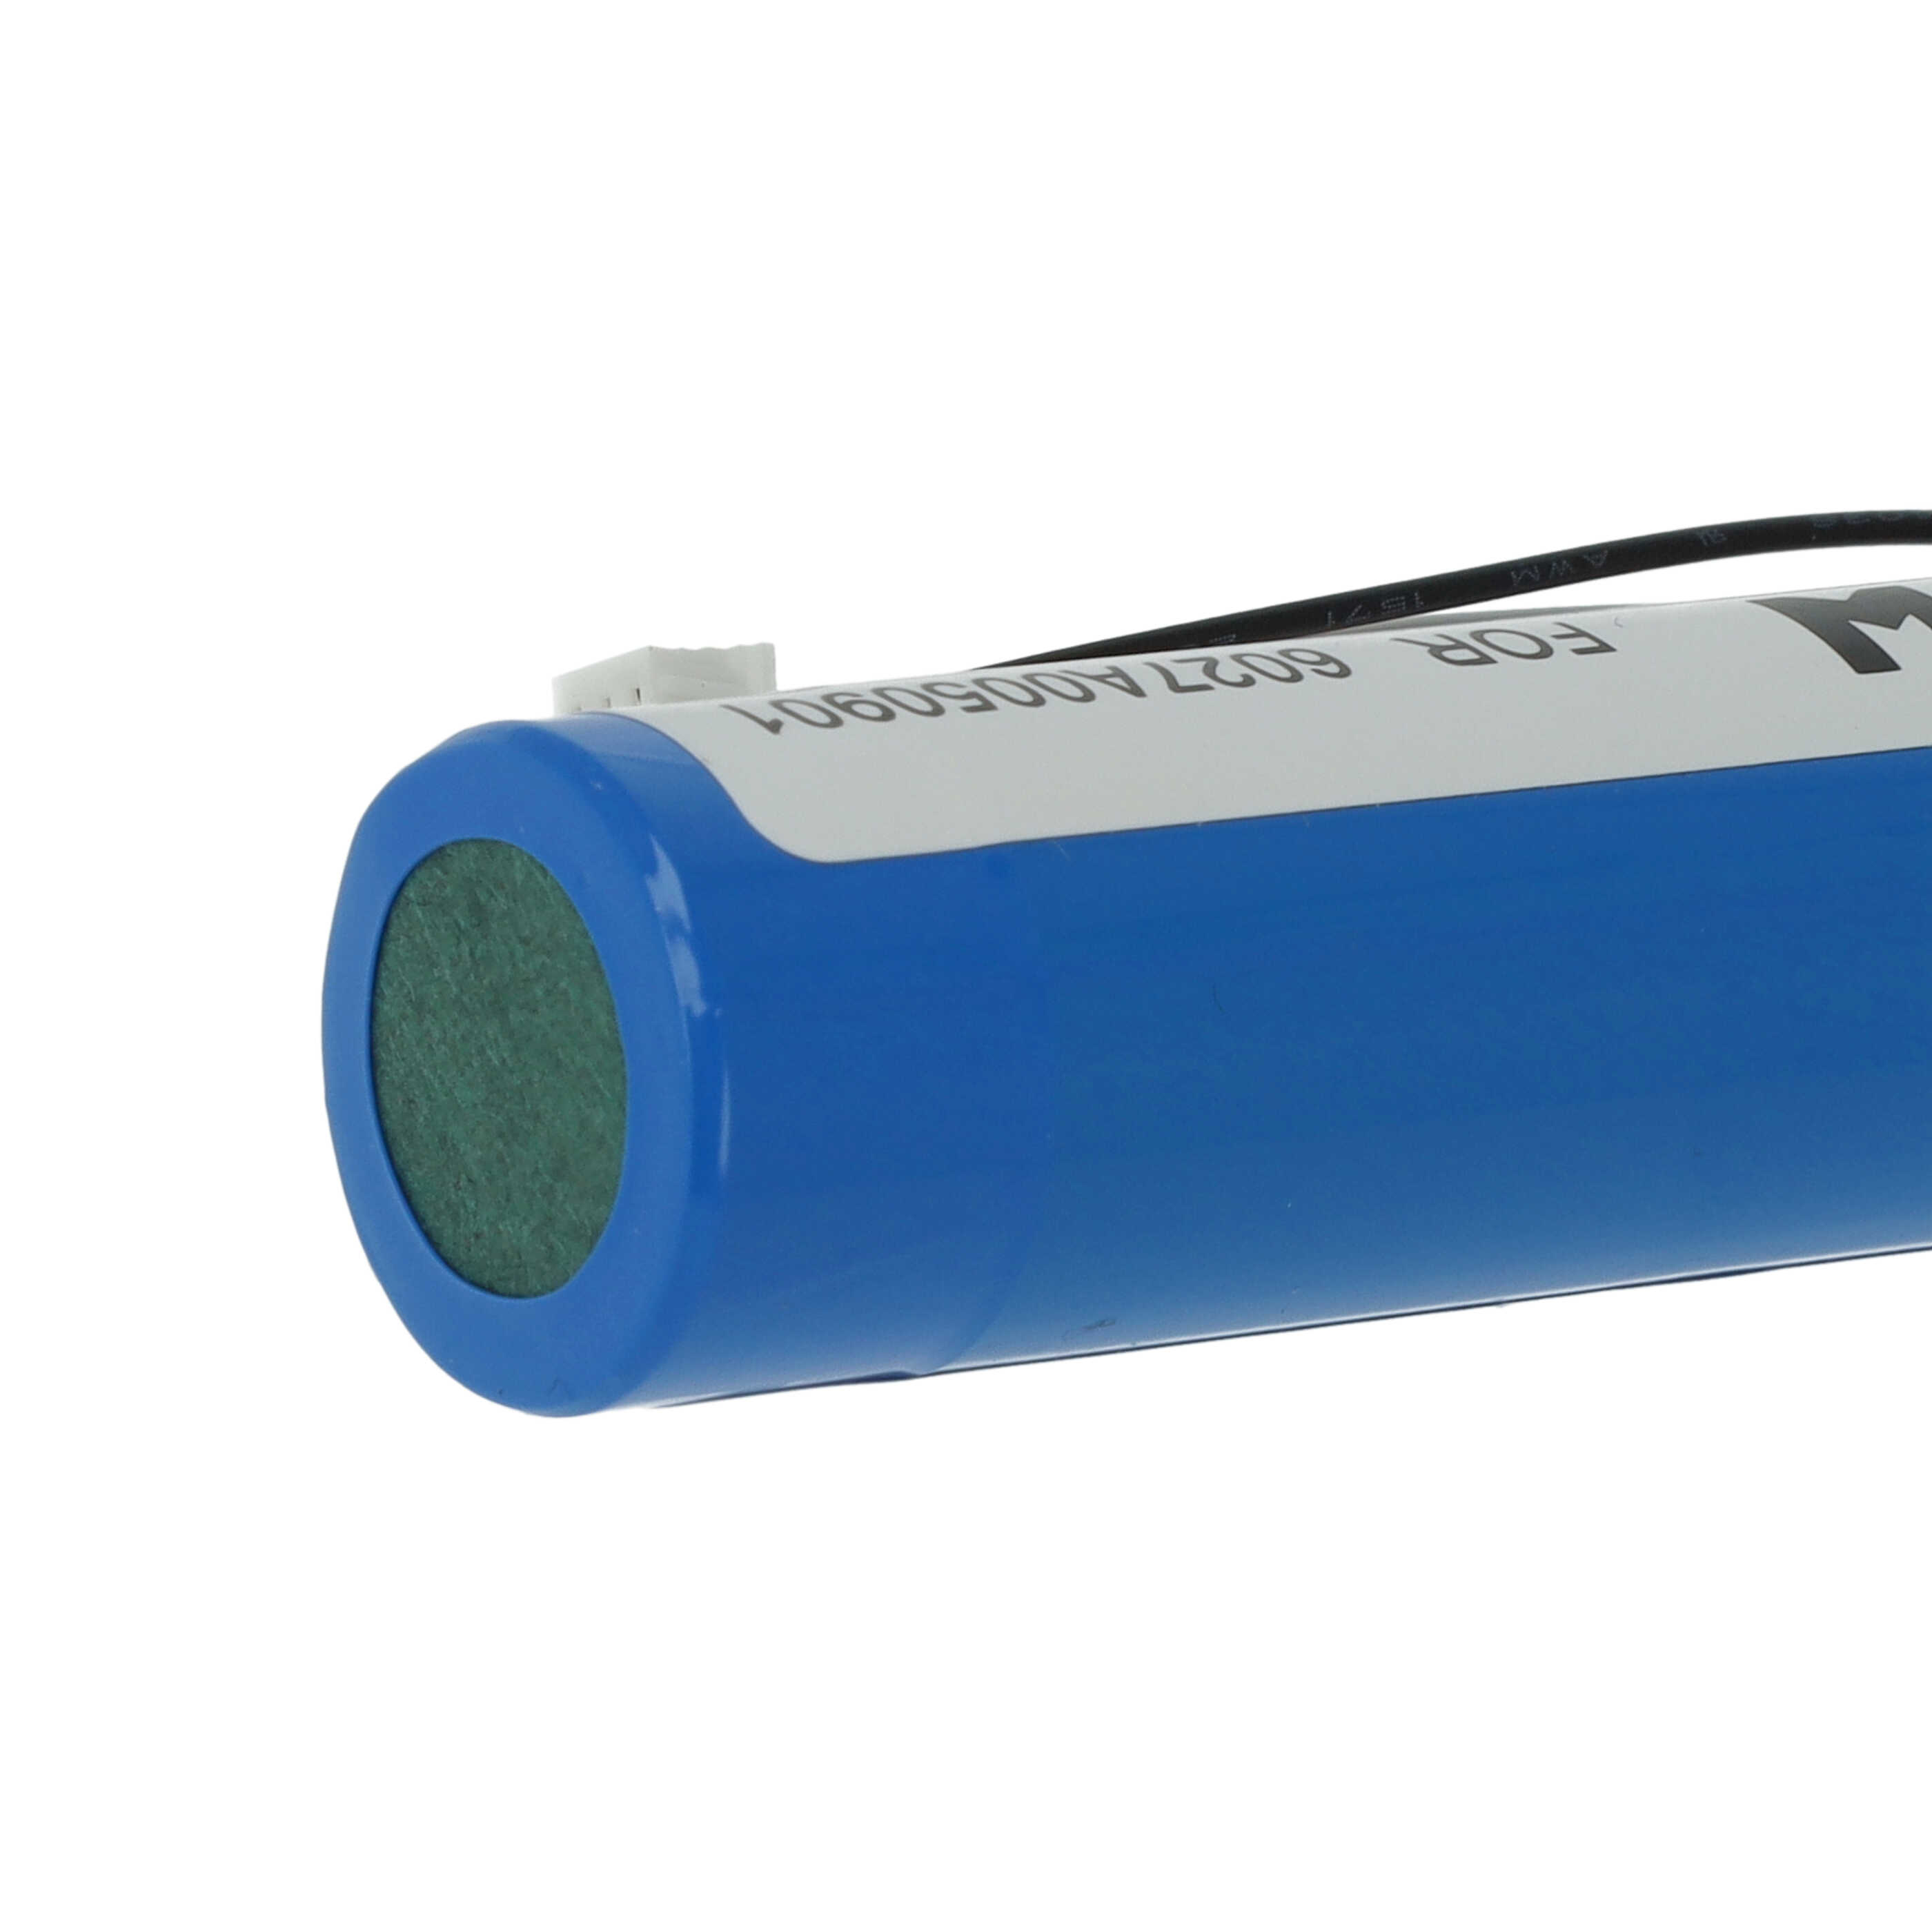 Batterie remplace TomTom MALAGA, 6027A0131301, 6027A0050901, L5 pour navigation GPS - 3000mAh 3,7V Li-ion